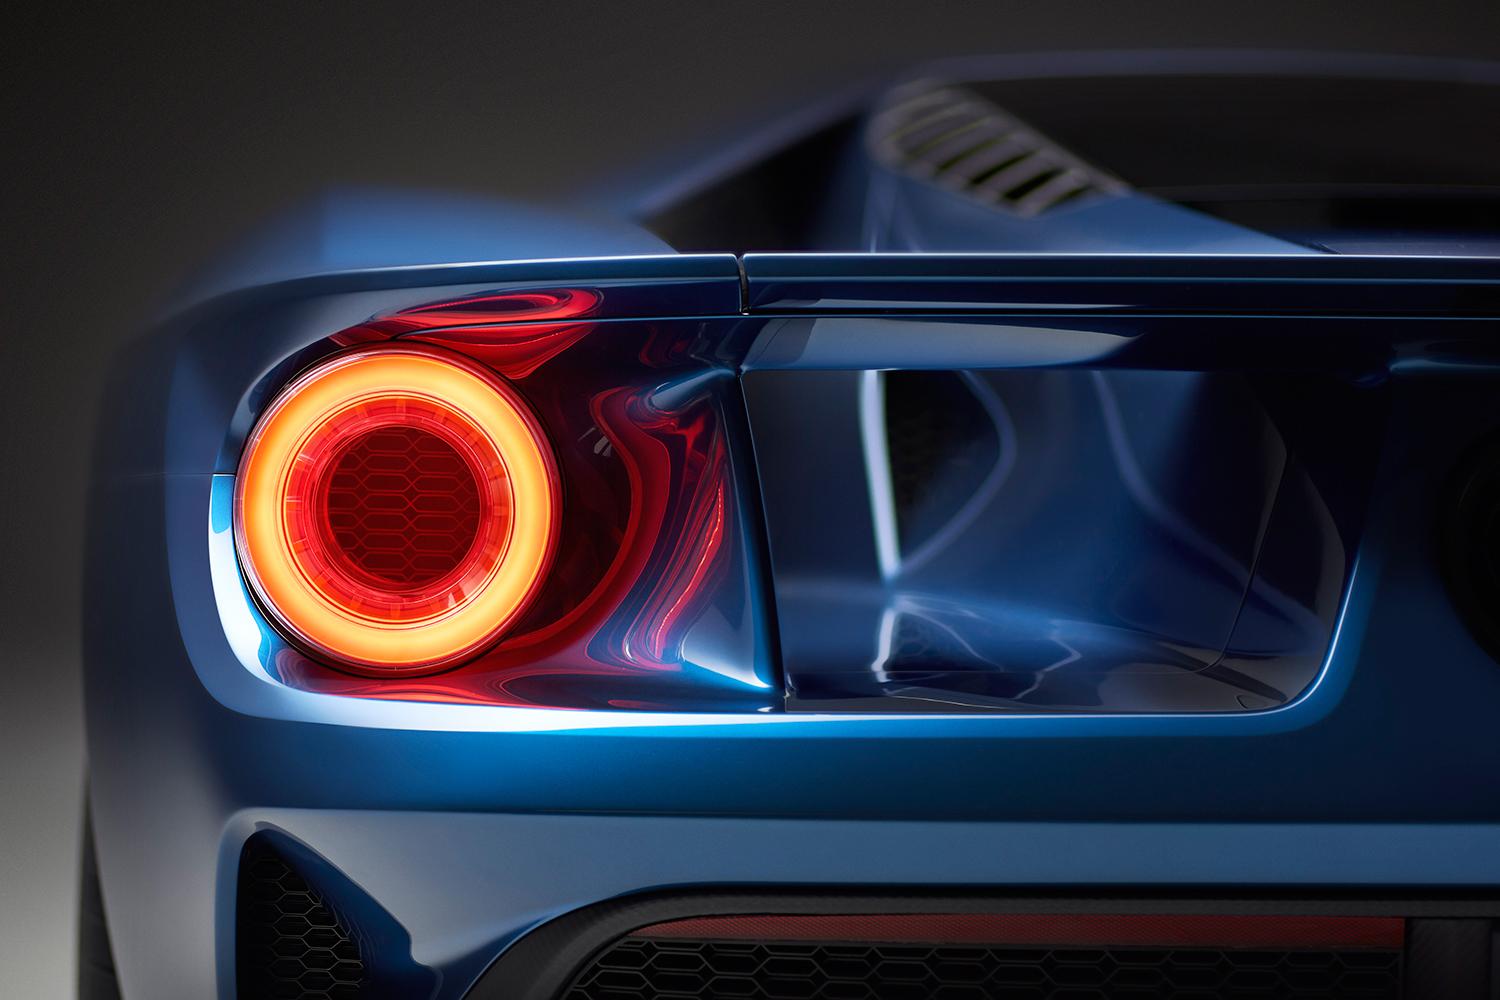 2016 Ford GT Carbon Fiber